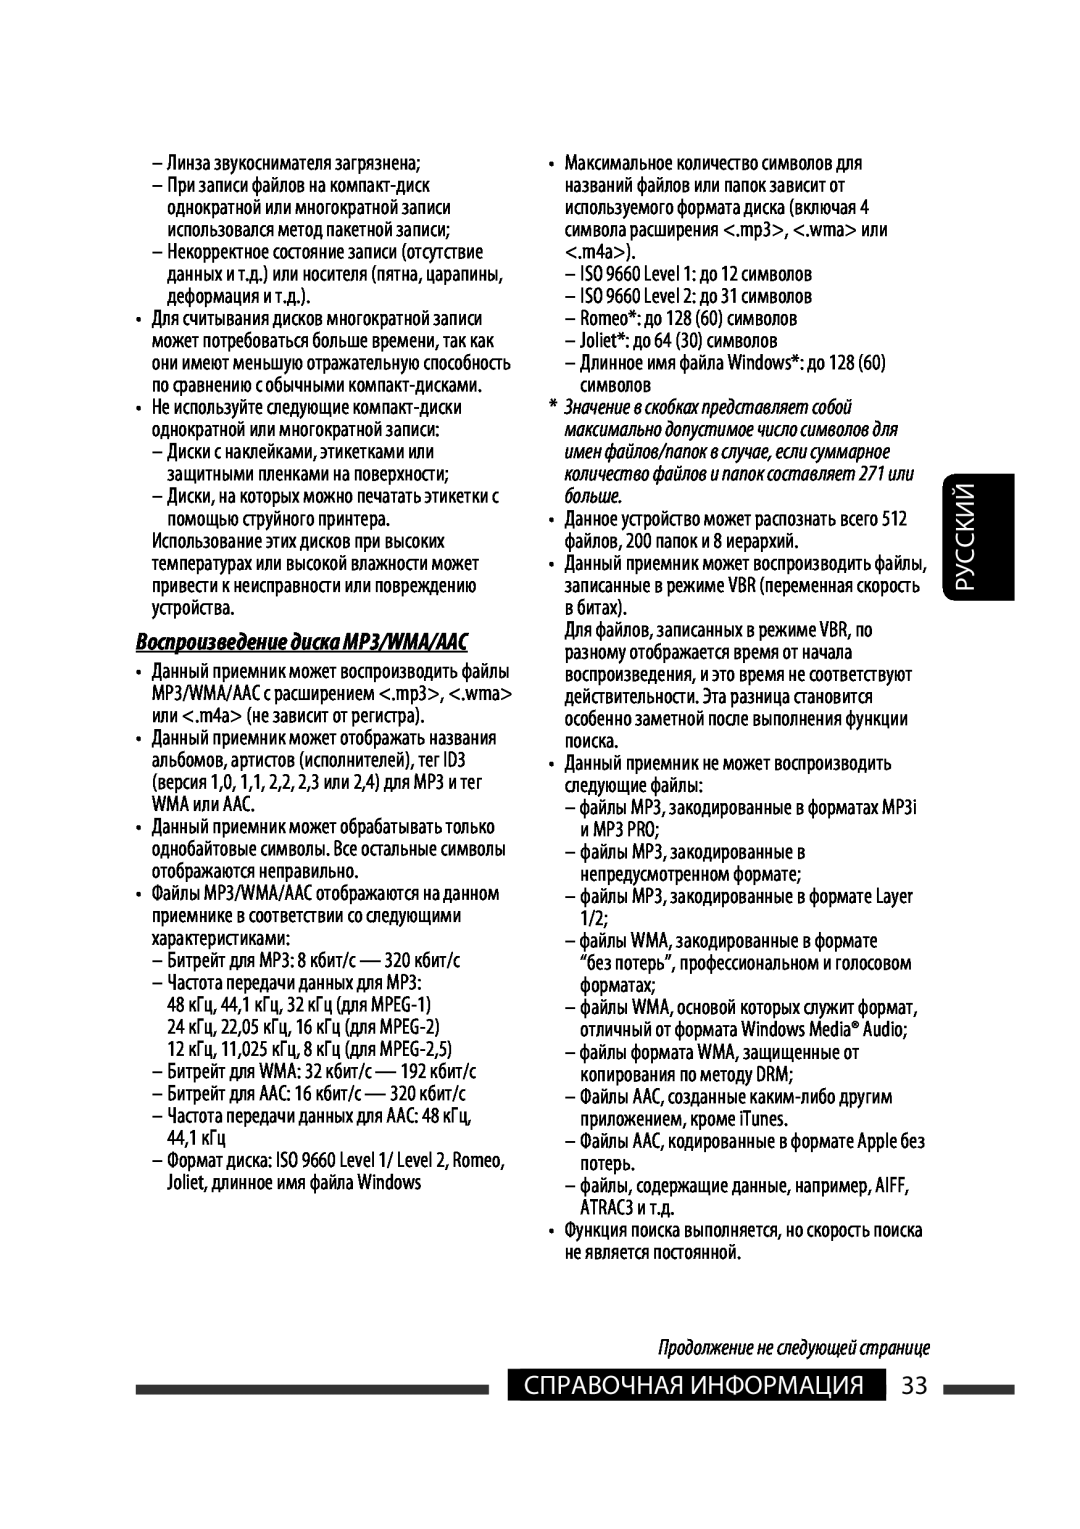 JVC KW-XG701 manual Руcckий, Справочная Информация, Линза звукоснимателя загрязнена, Частота передачи данных для МР3 